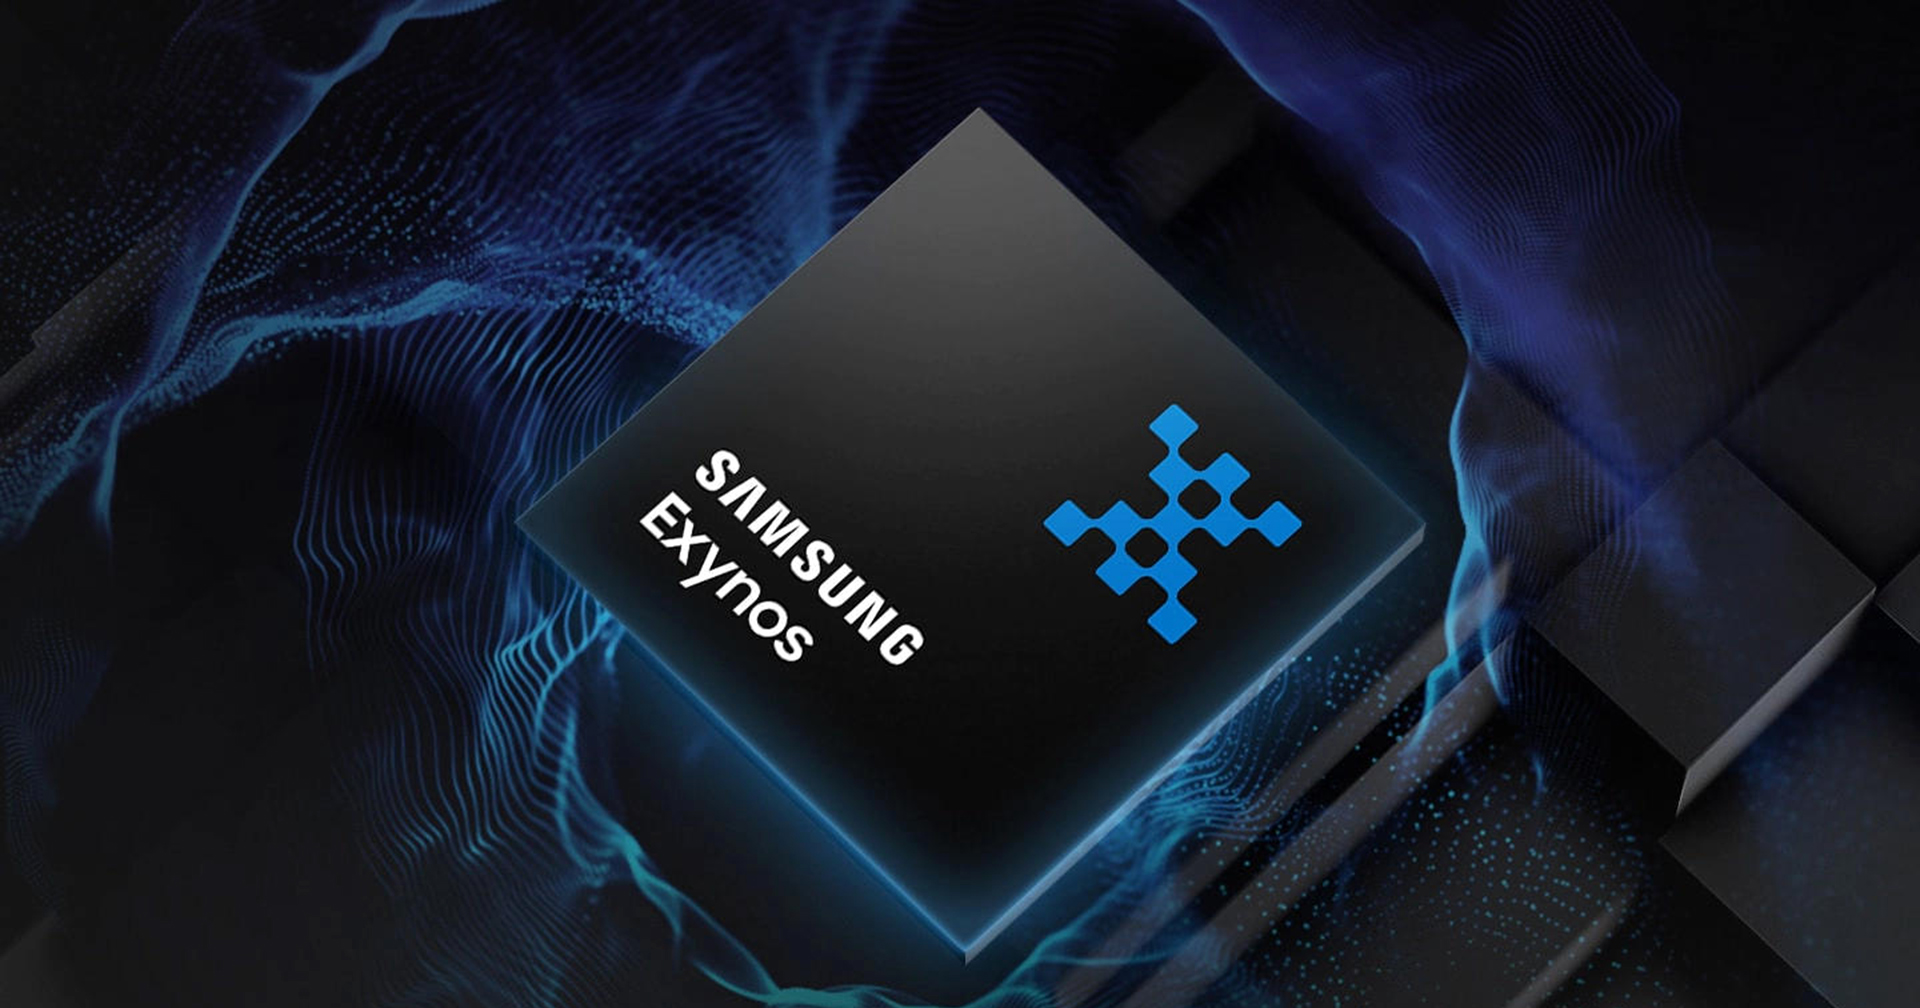 Samsung เตรียมใส่ฟีเจอร์ Ray Tracing ในการเล่นเกมด้วยชิป Exynos 2200